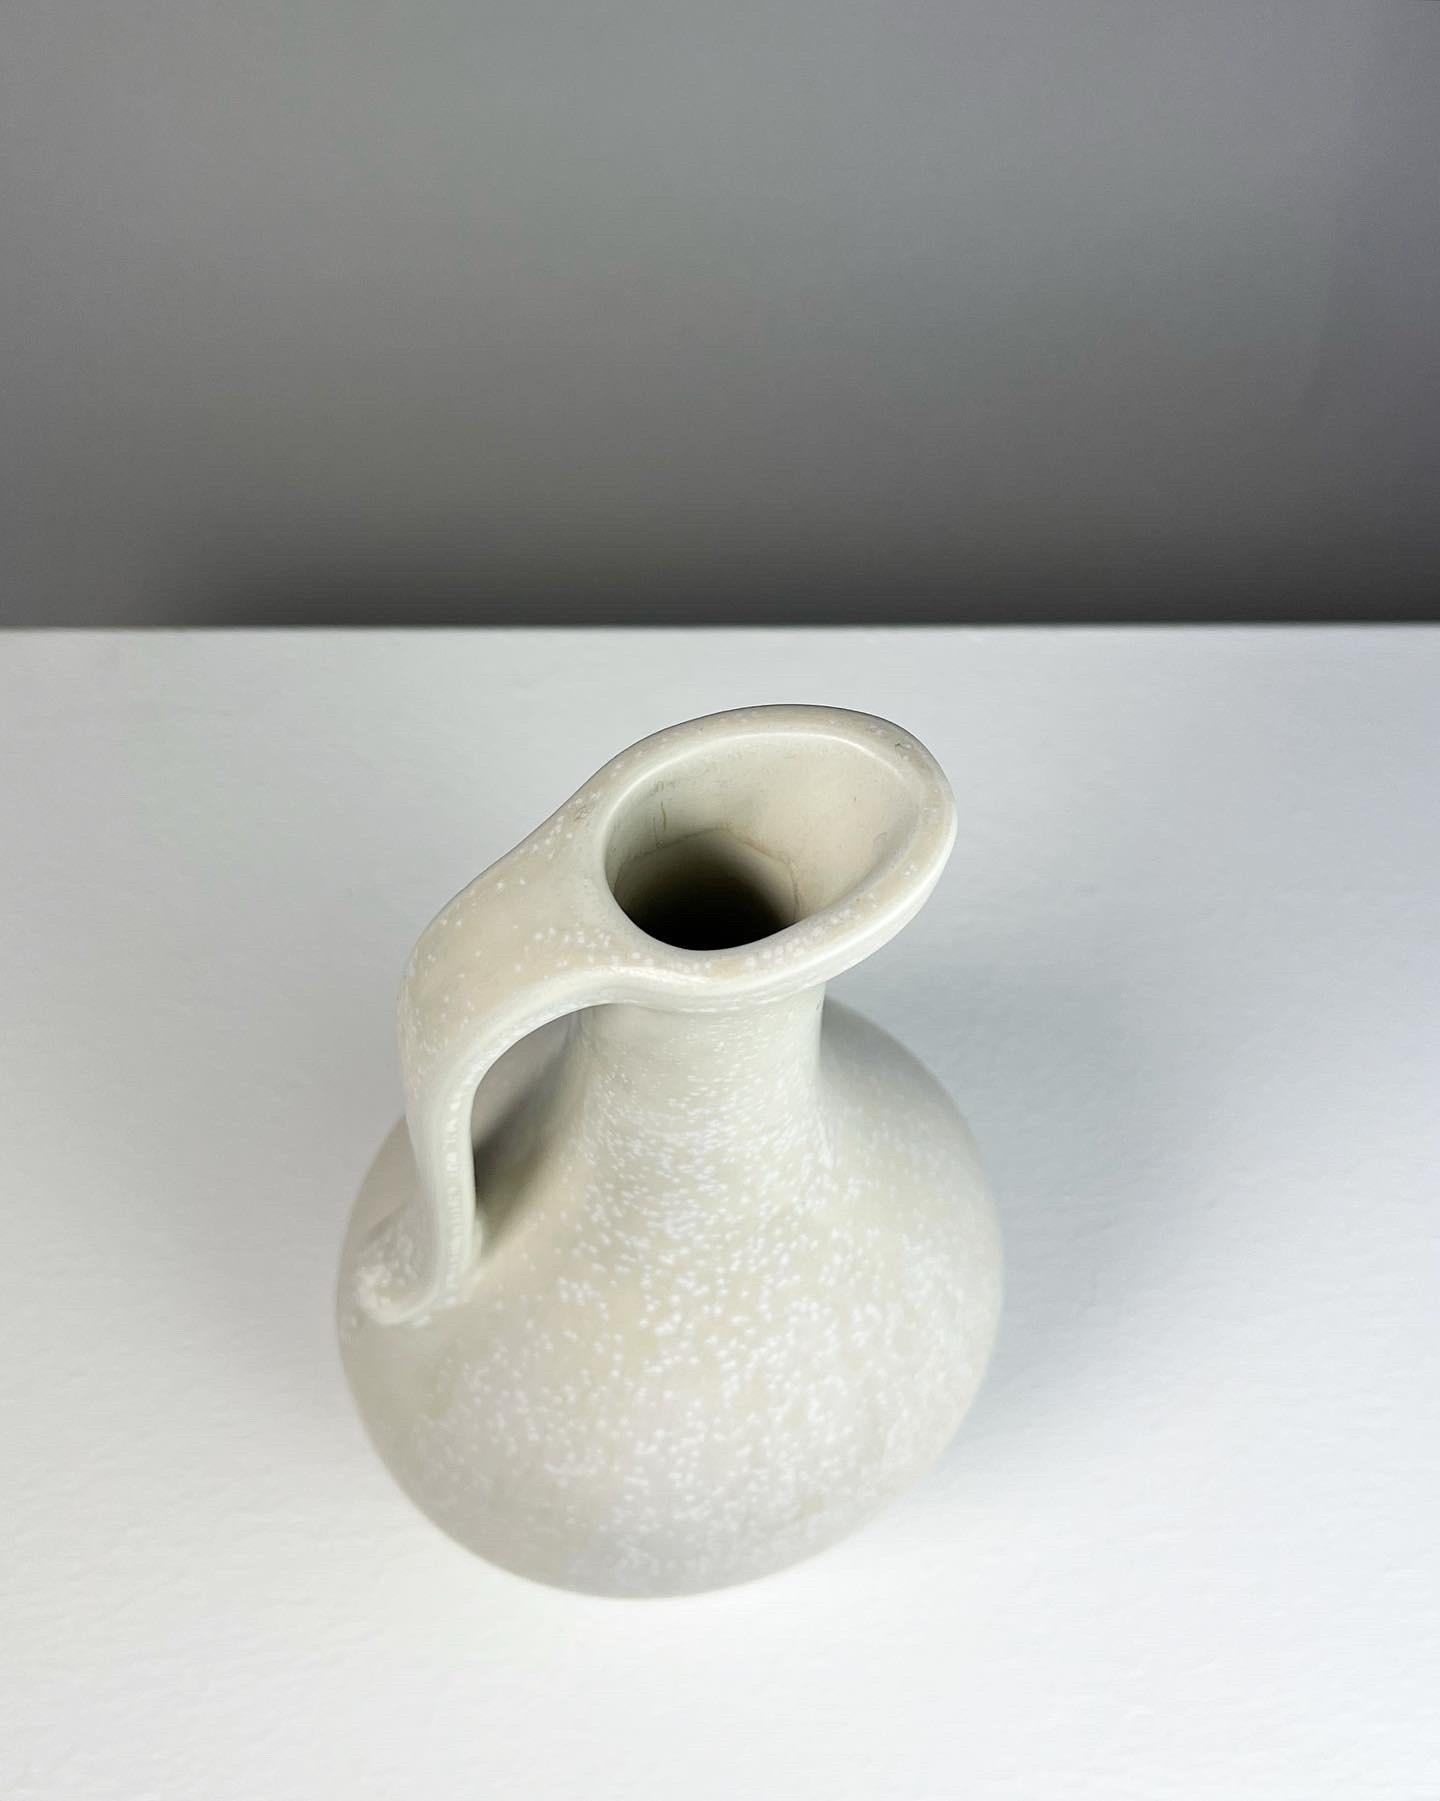 Hand-Crafted Gunnar Nylund Stoneware Pitcher Vase White Mimosa Glaze Rörstrand Sweden 1950s For Sale